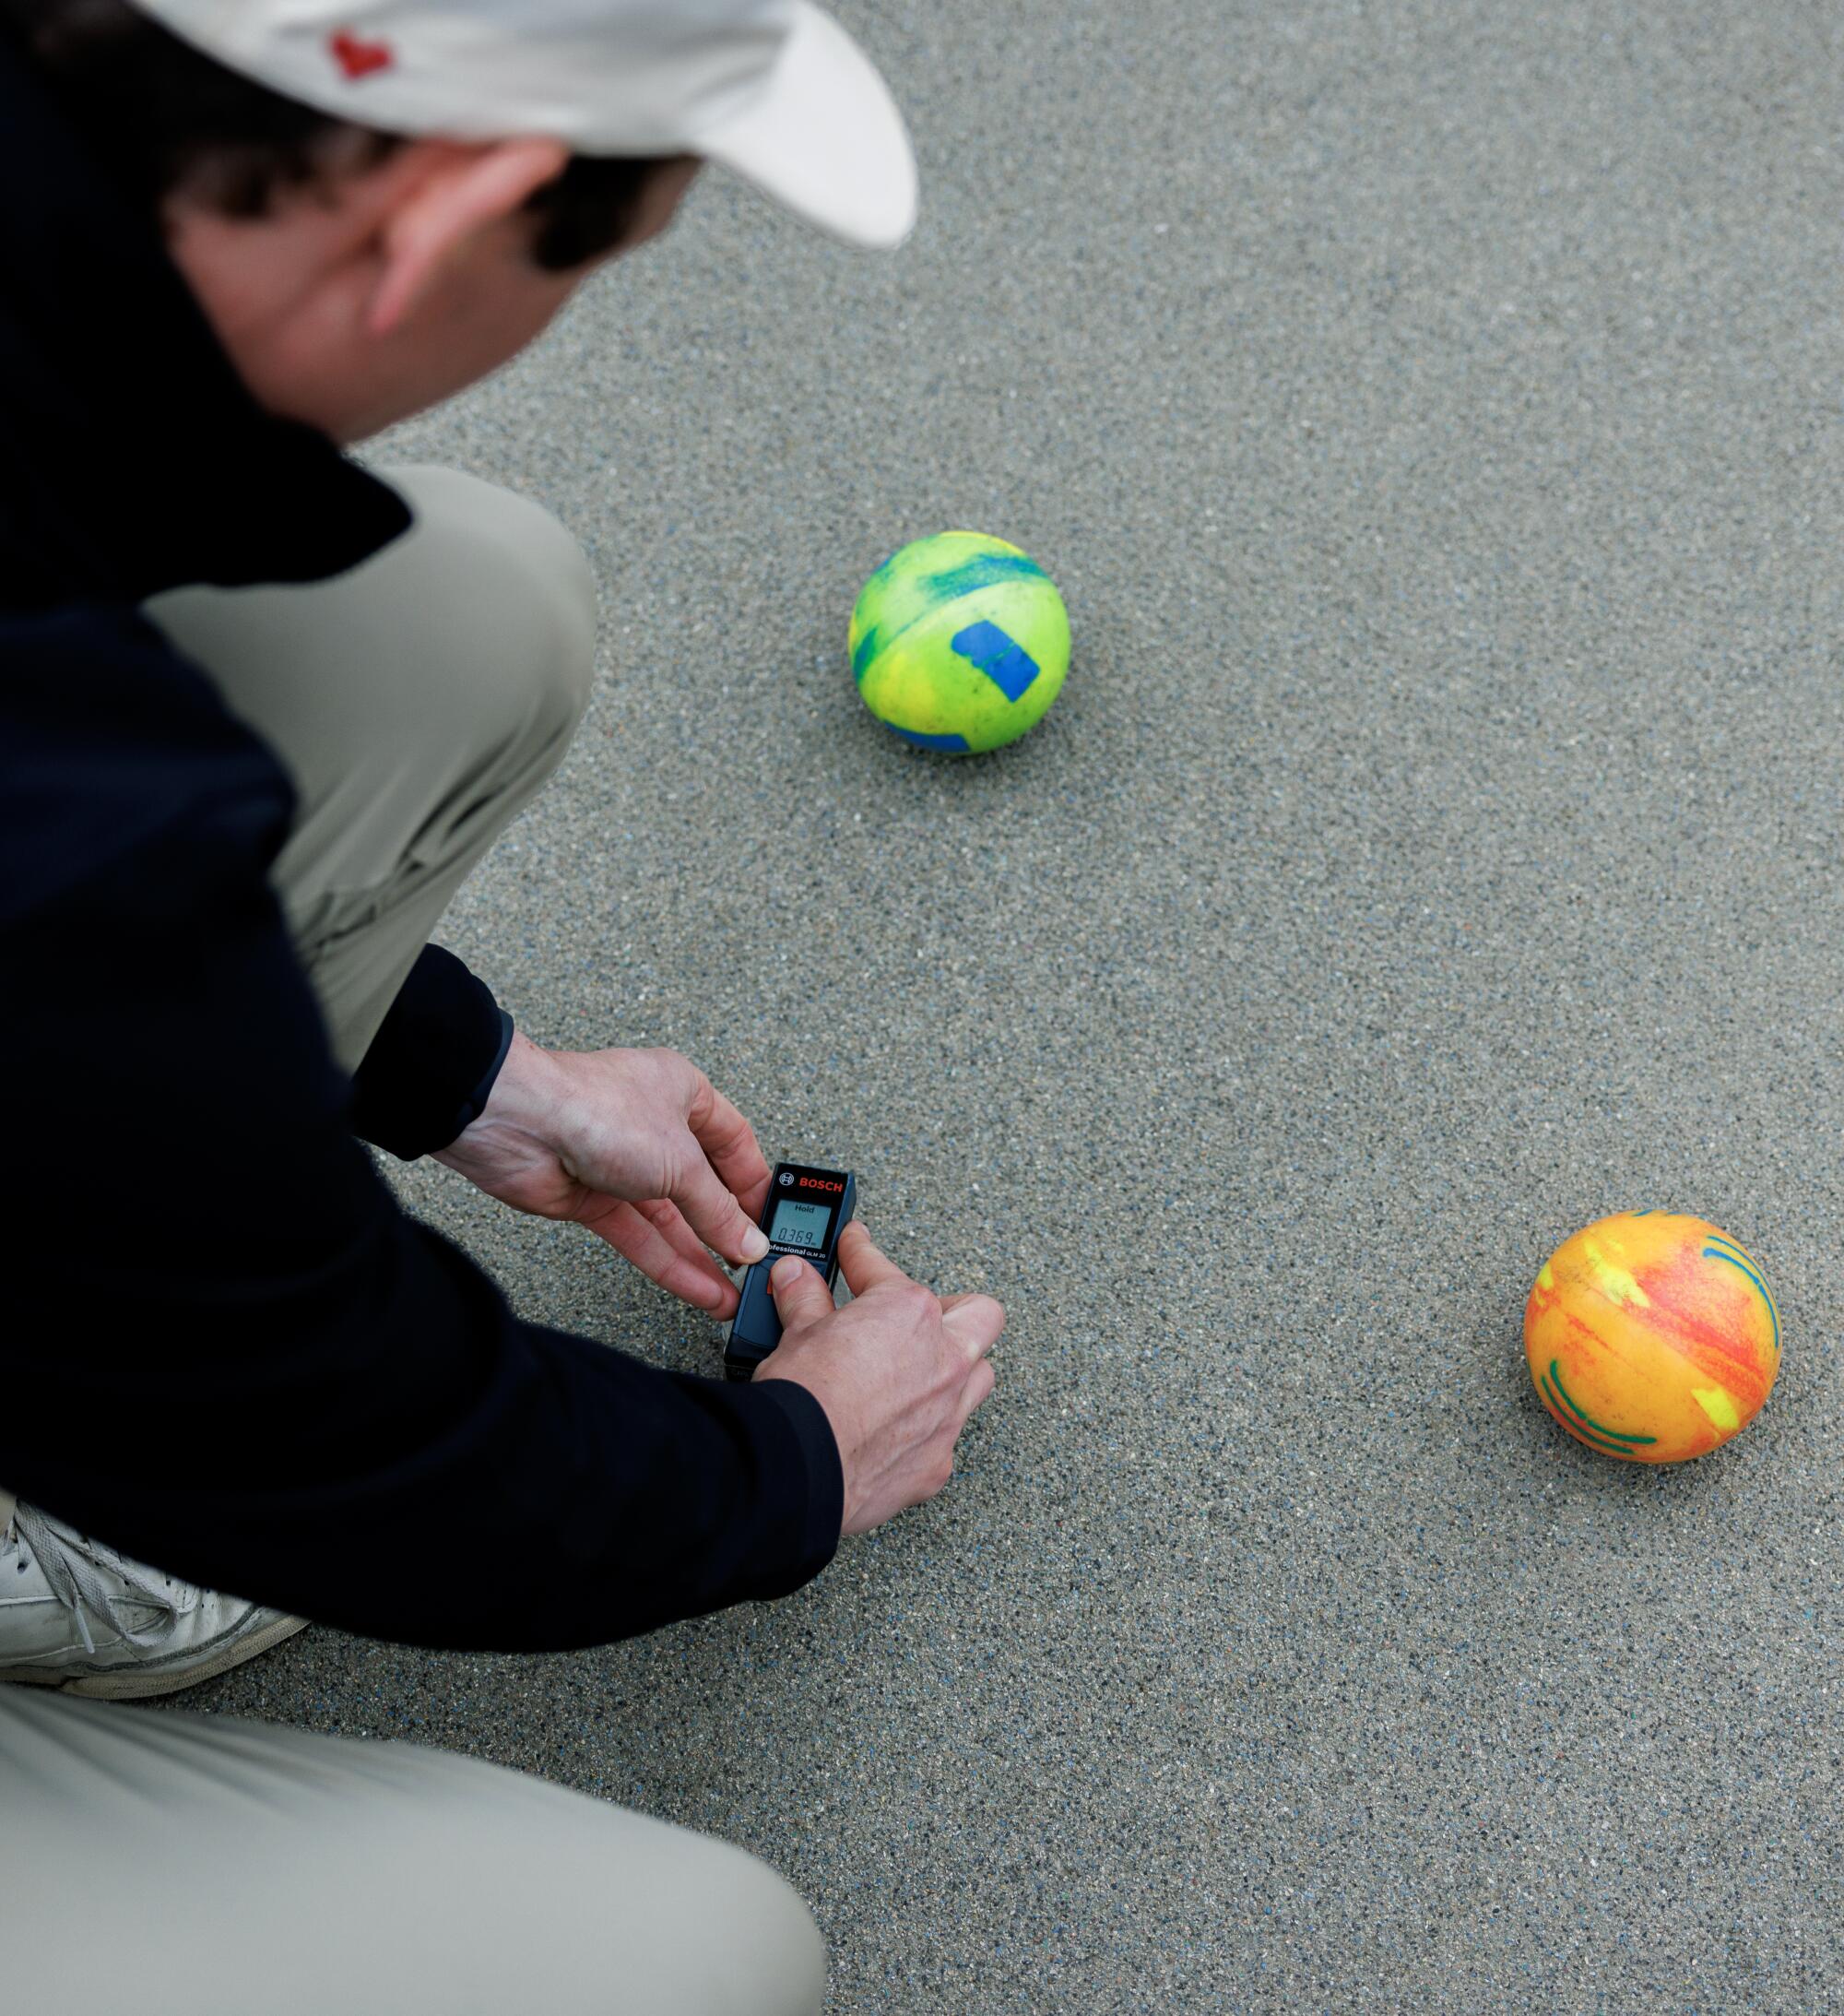 Un hombre mide la distancia entre dos bolas de bochas utilizando un dispositivo digital.